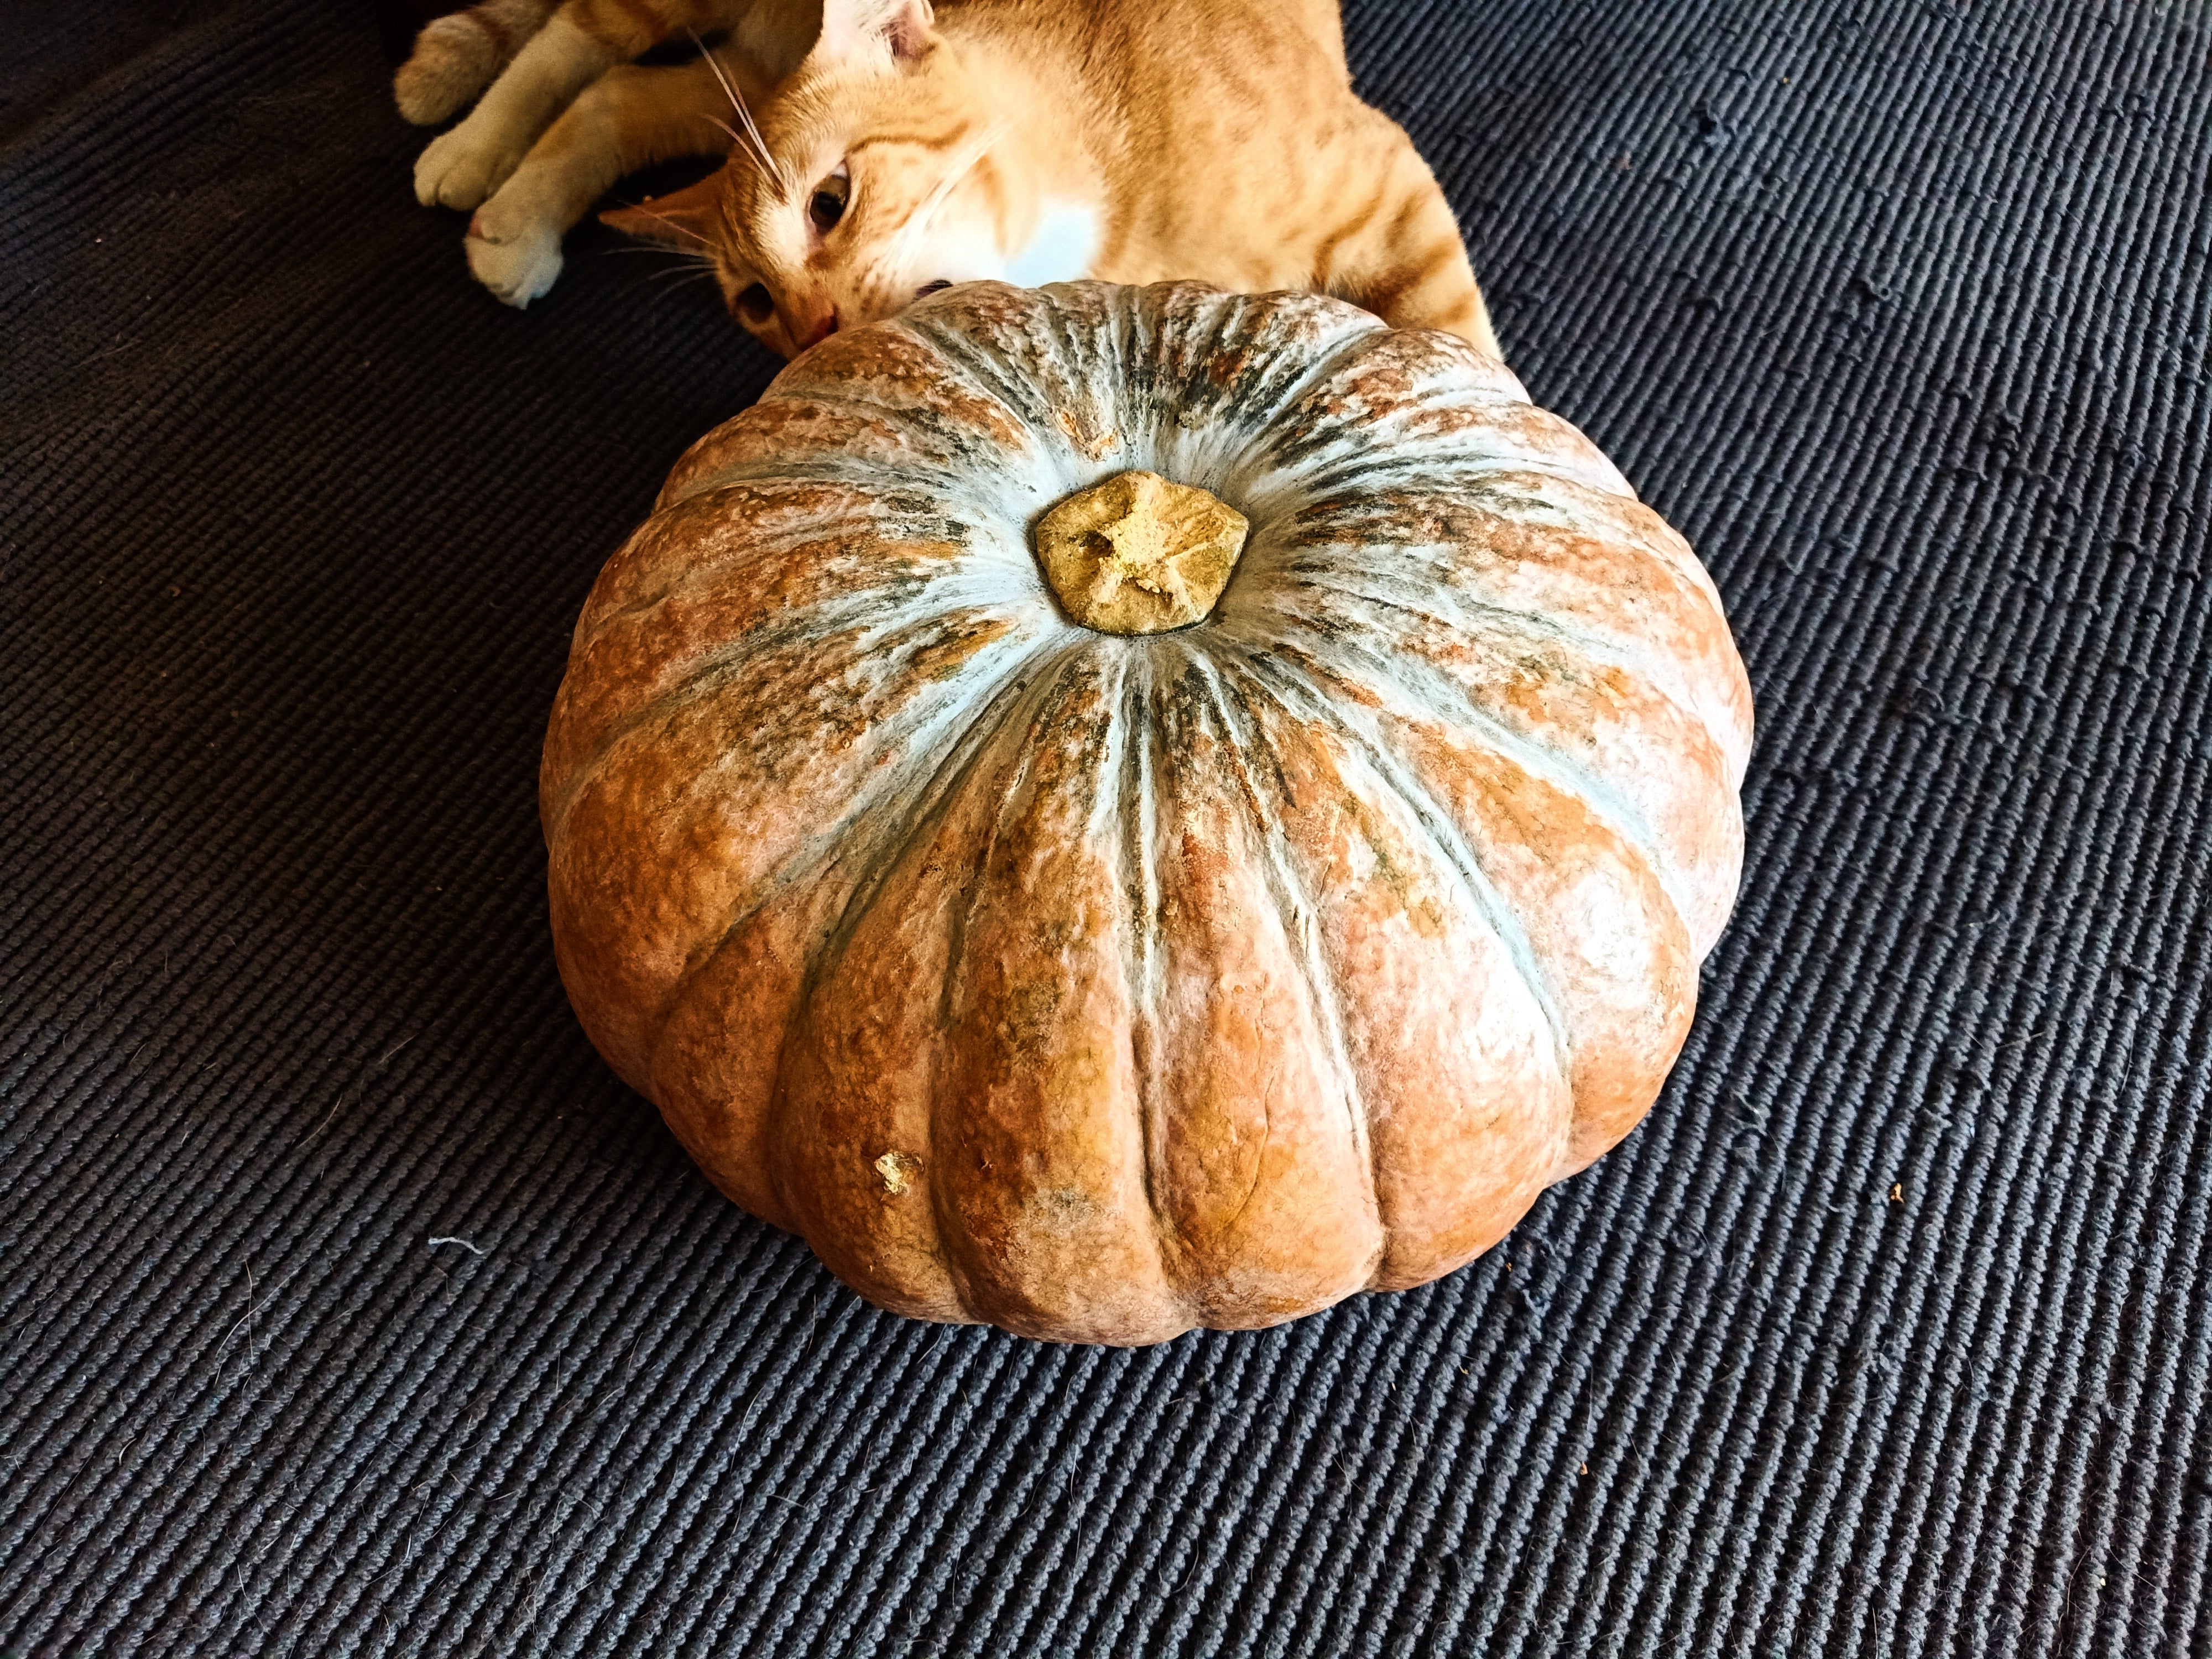 fat-ginger-kitten-chonk-cat-biting-squash-pumpkin-kalabasa